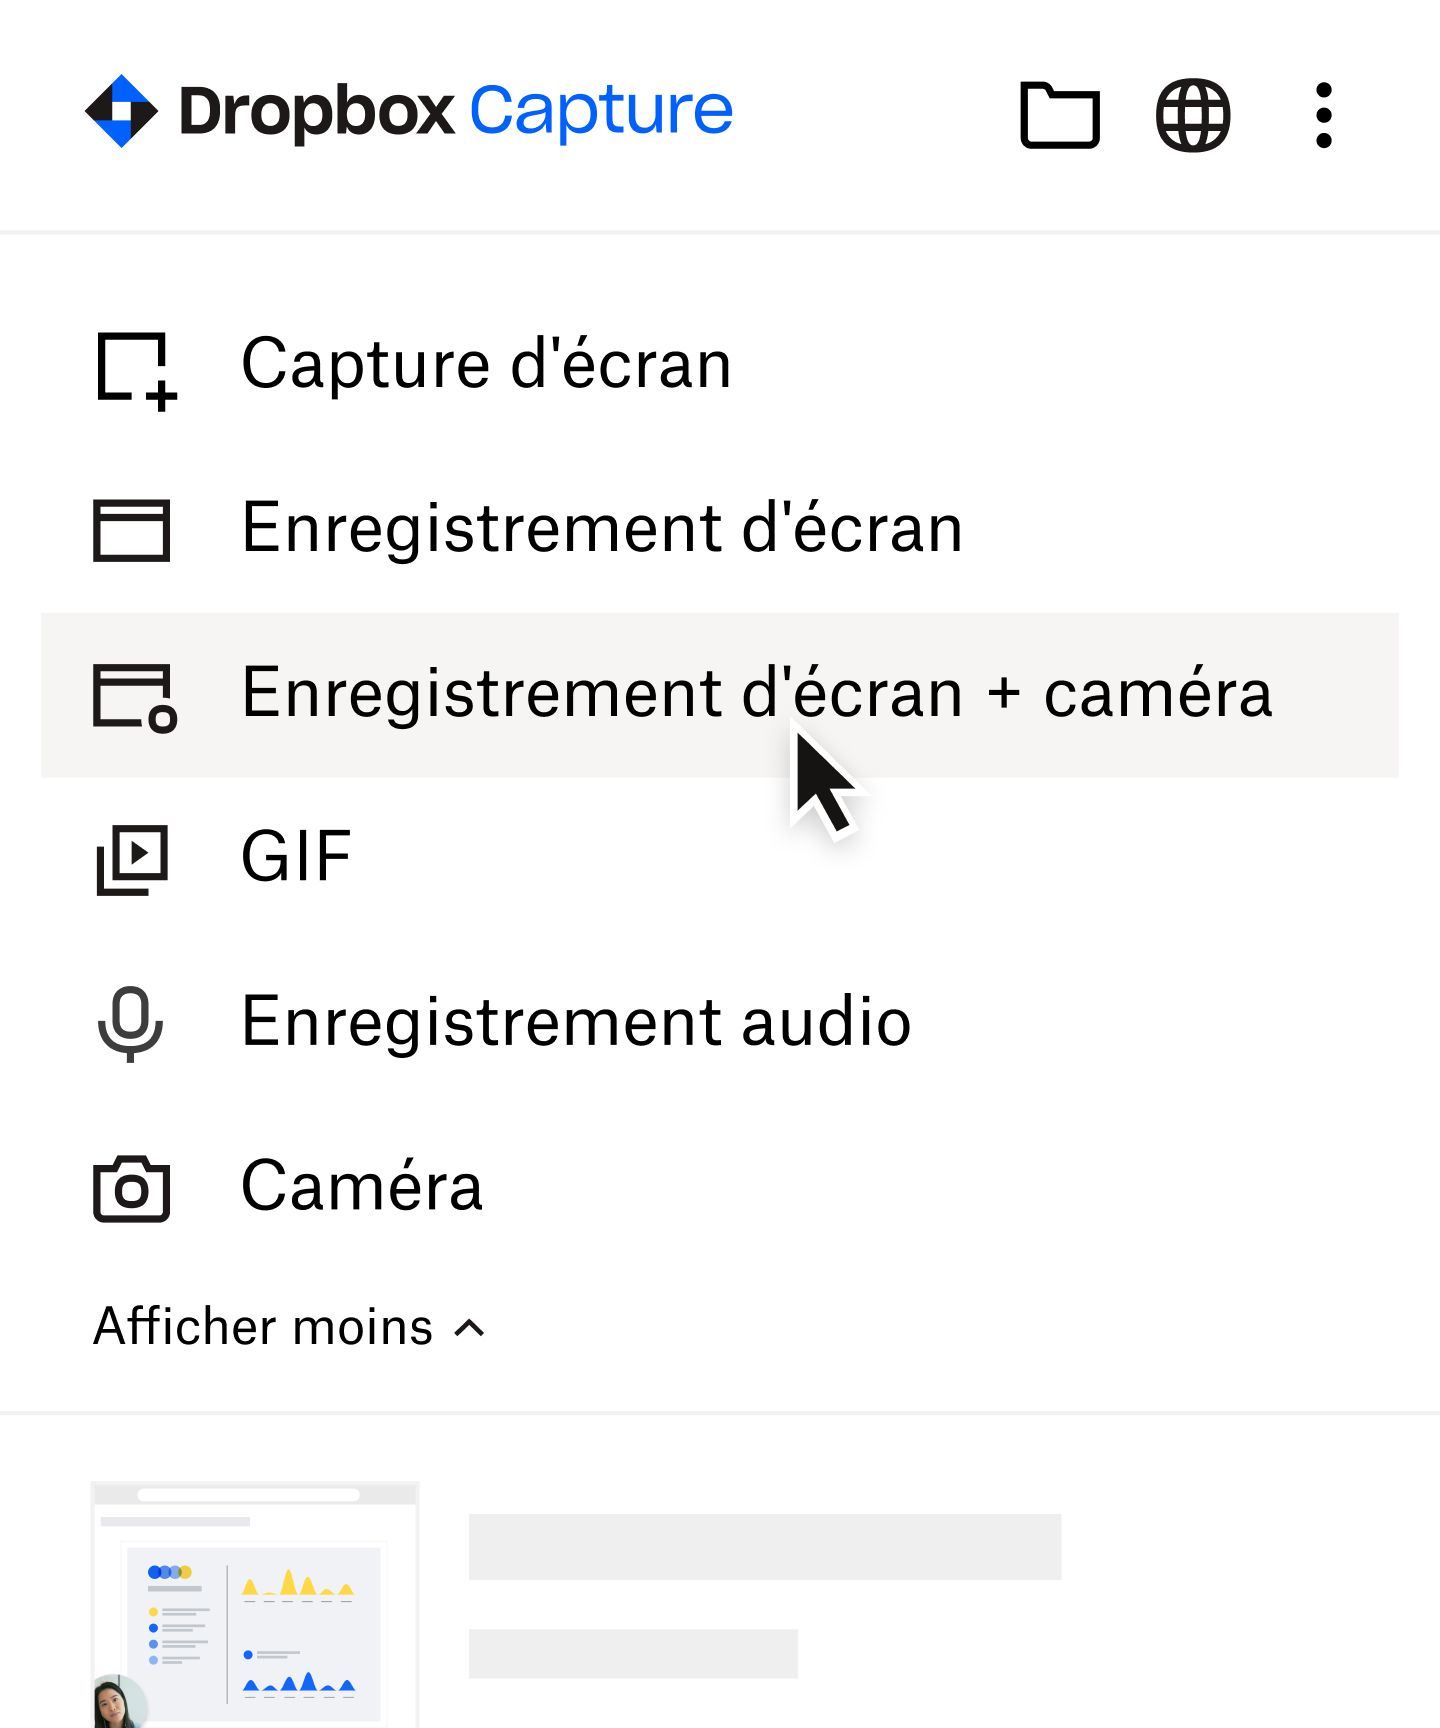 Utilisateur sélectionnant « Enregistrement d'écran + caméra » dans le menu Dropbox Capture